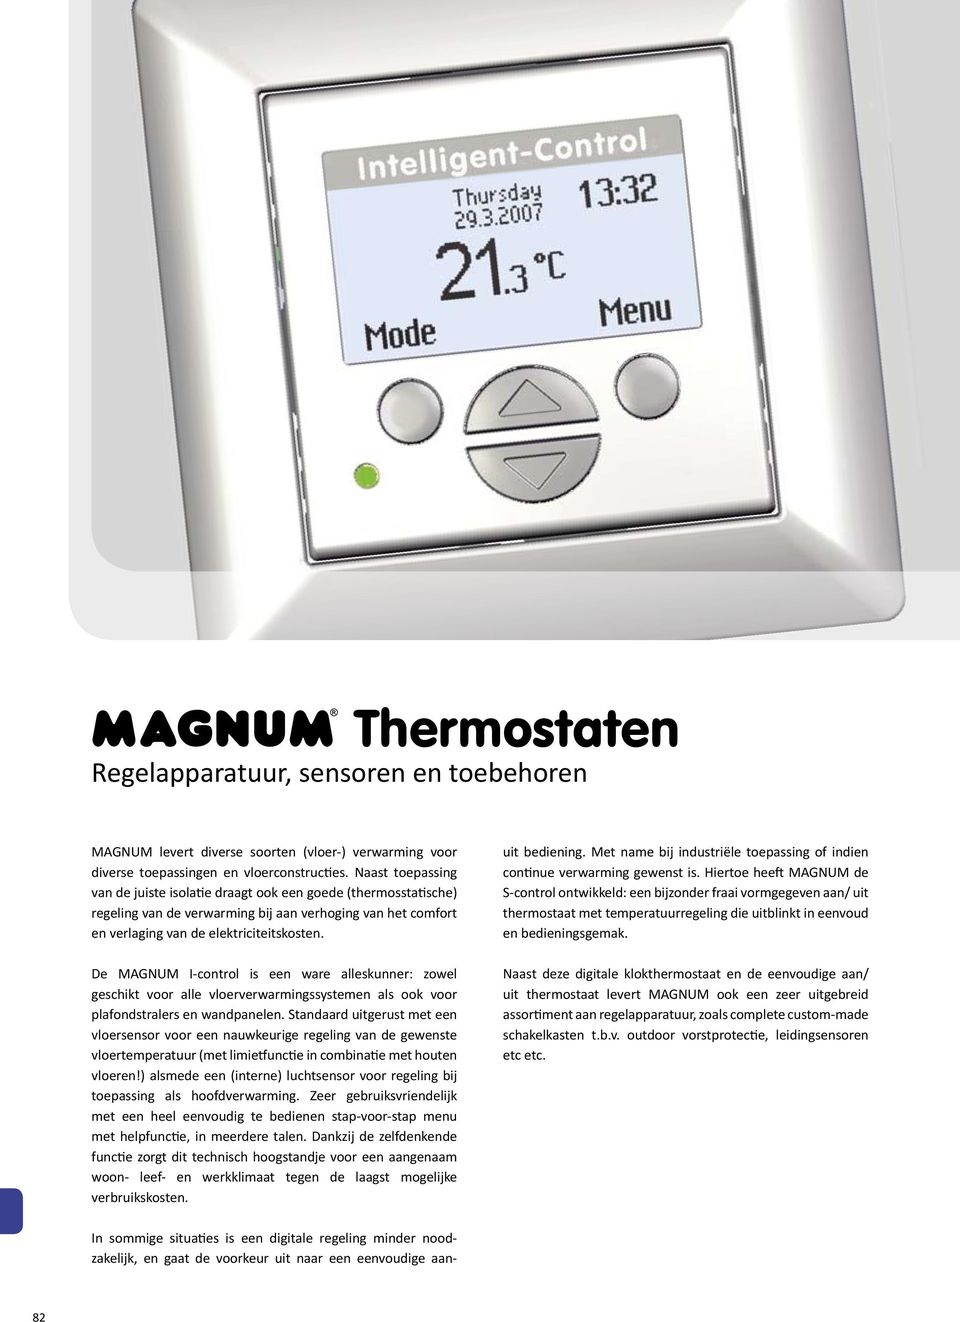 De MAGNUM I-control is een ware alleskunner: zowel geschikt voor alle vloerverwarmingssystemen als ook voor plafondstralers en wandpanelen.